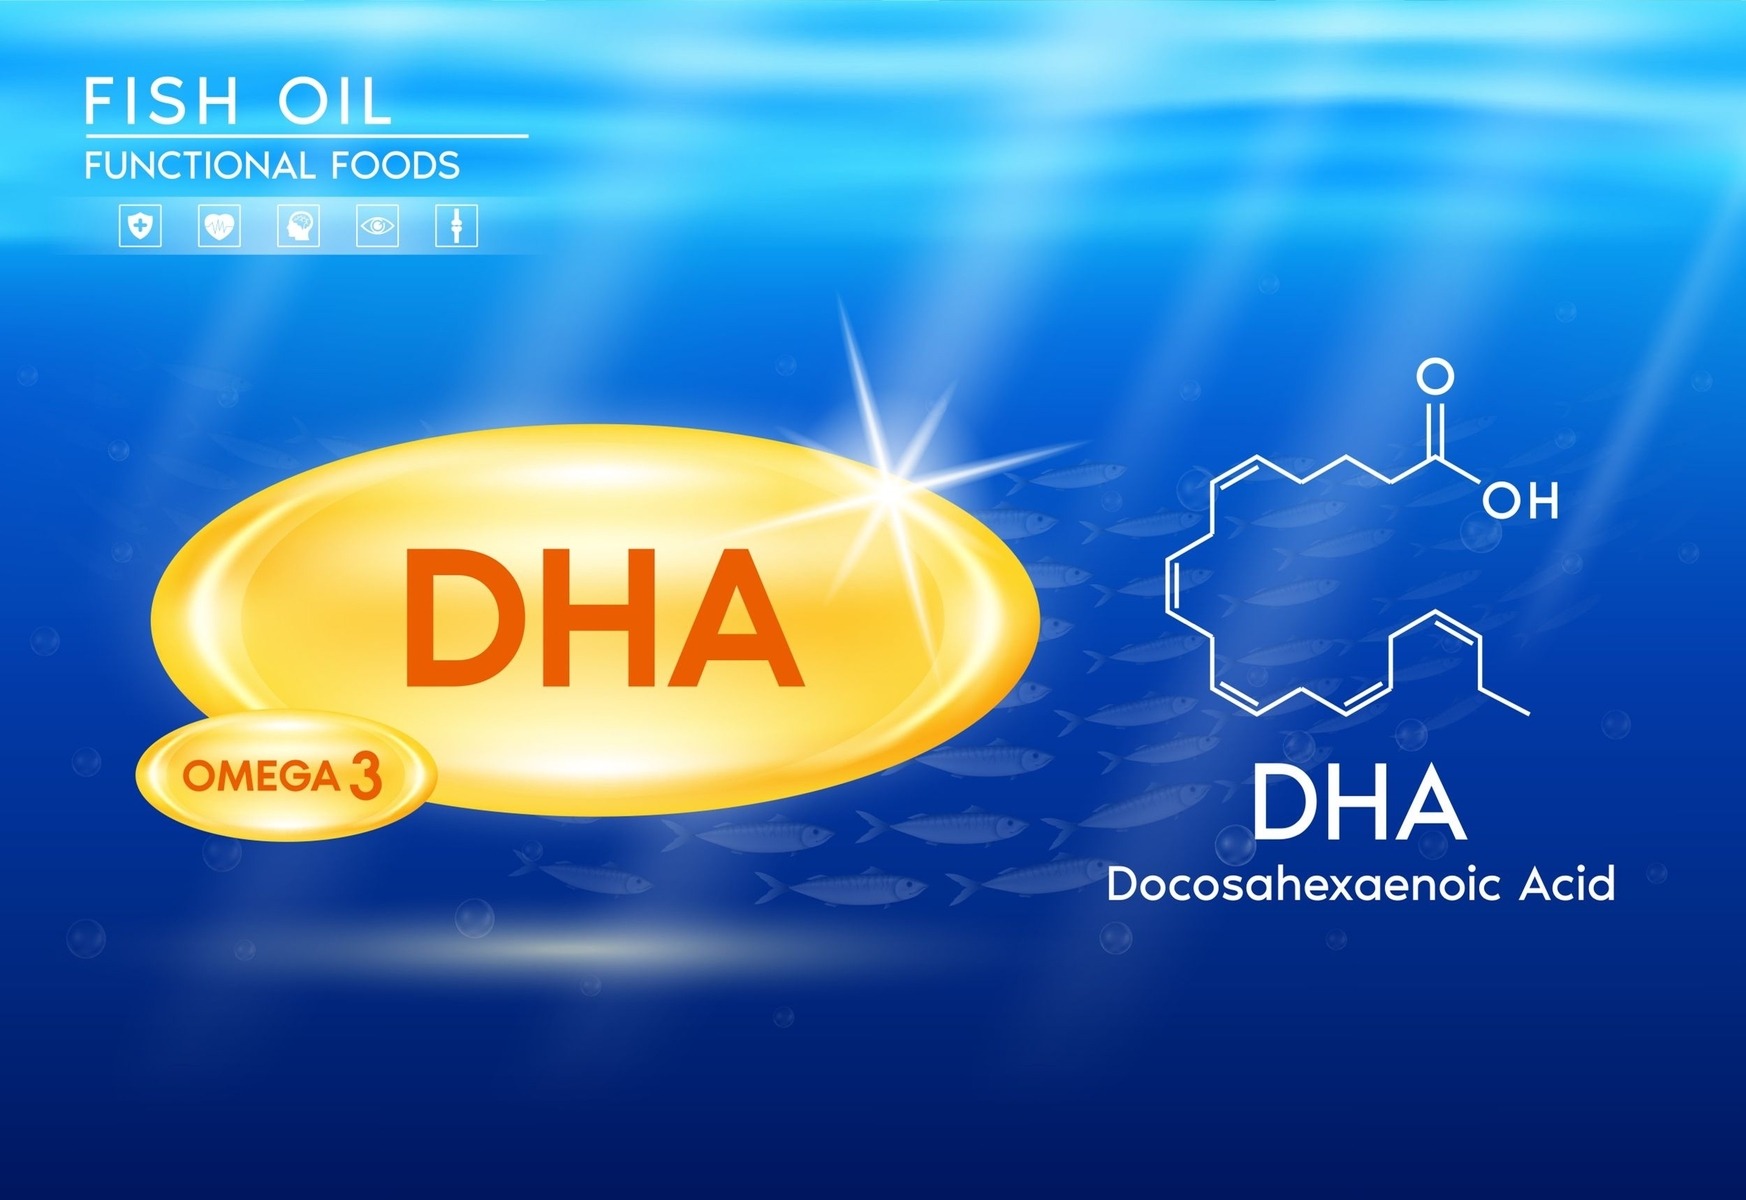 DHA Omega-3